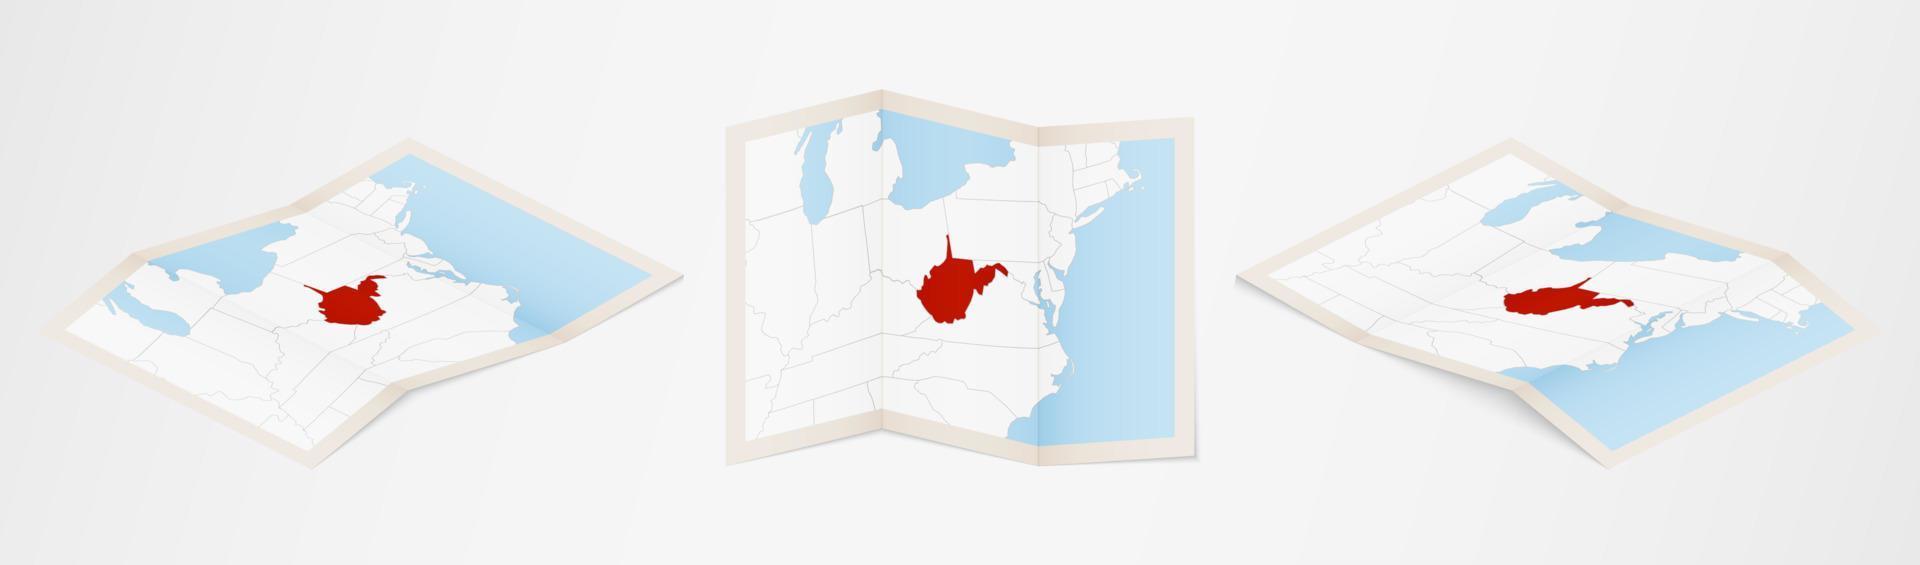 mapa dobrado de West Virginia em três versões diferentes. vetor